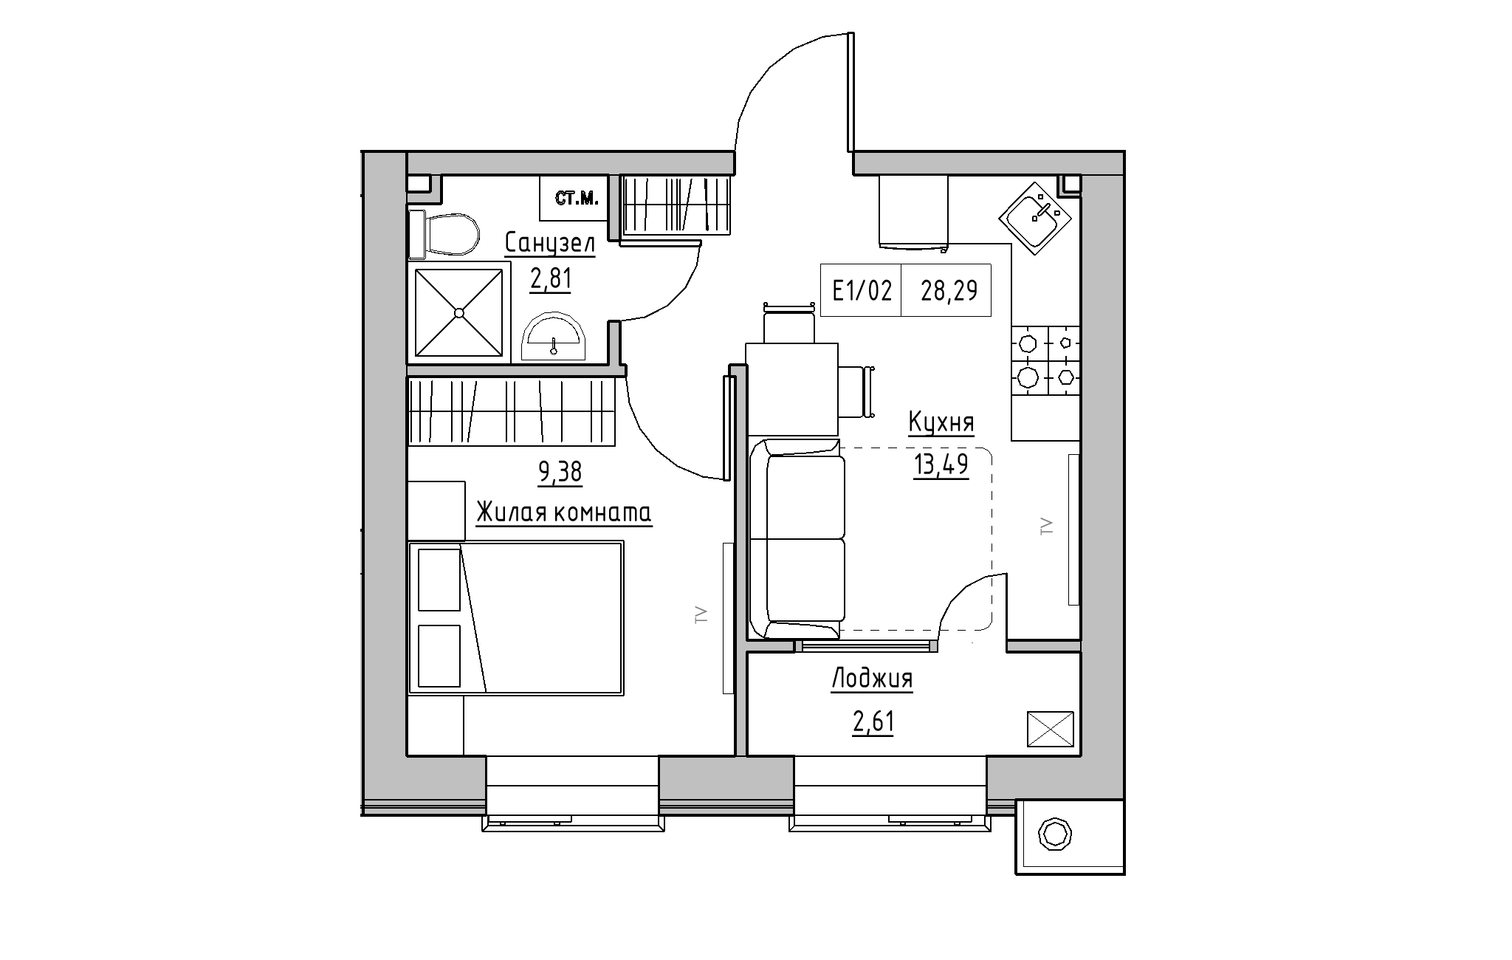 Планування 1-к квартира площею 28.29м2, KS-013-03/0013.